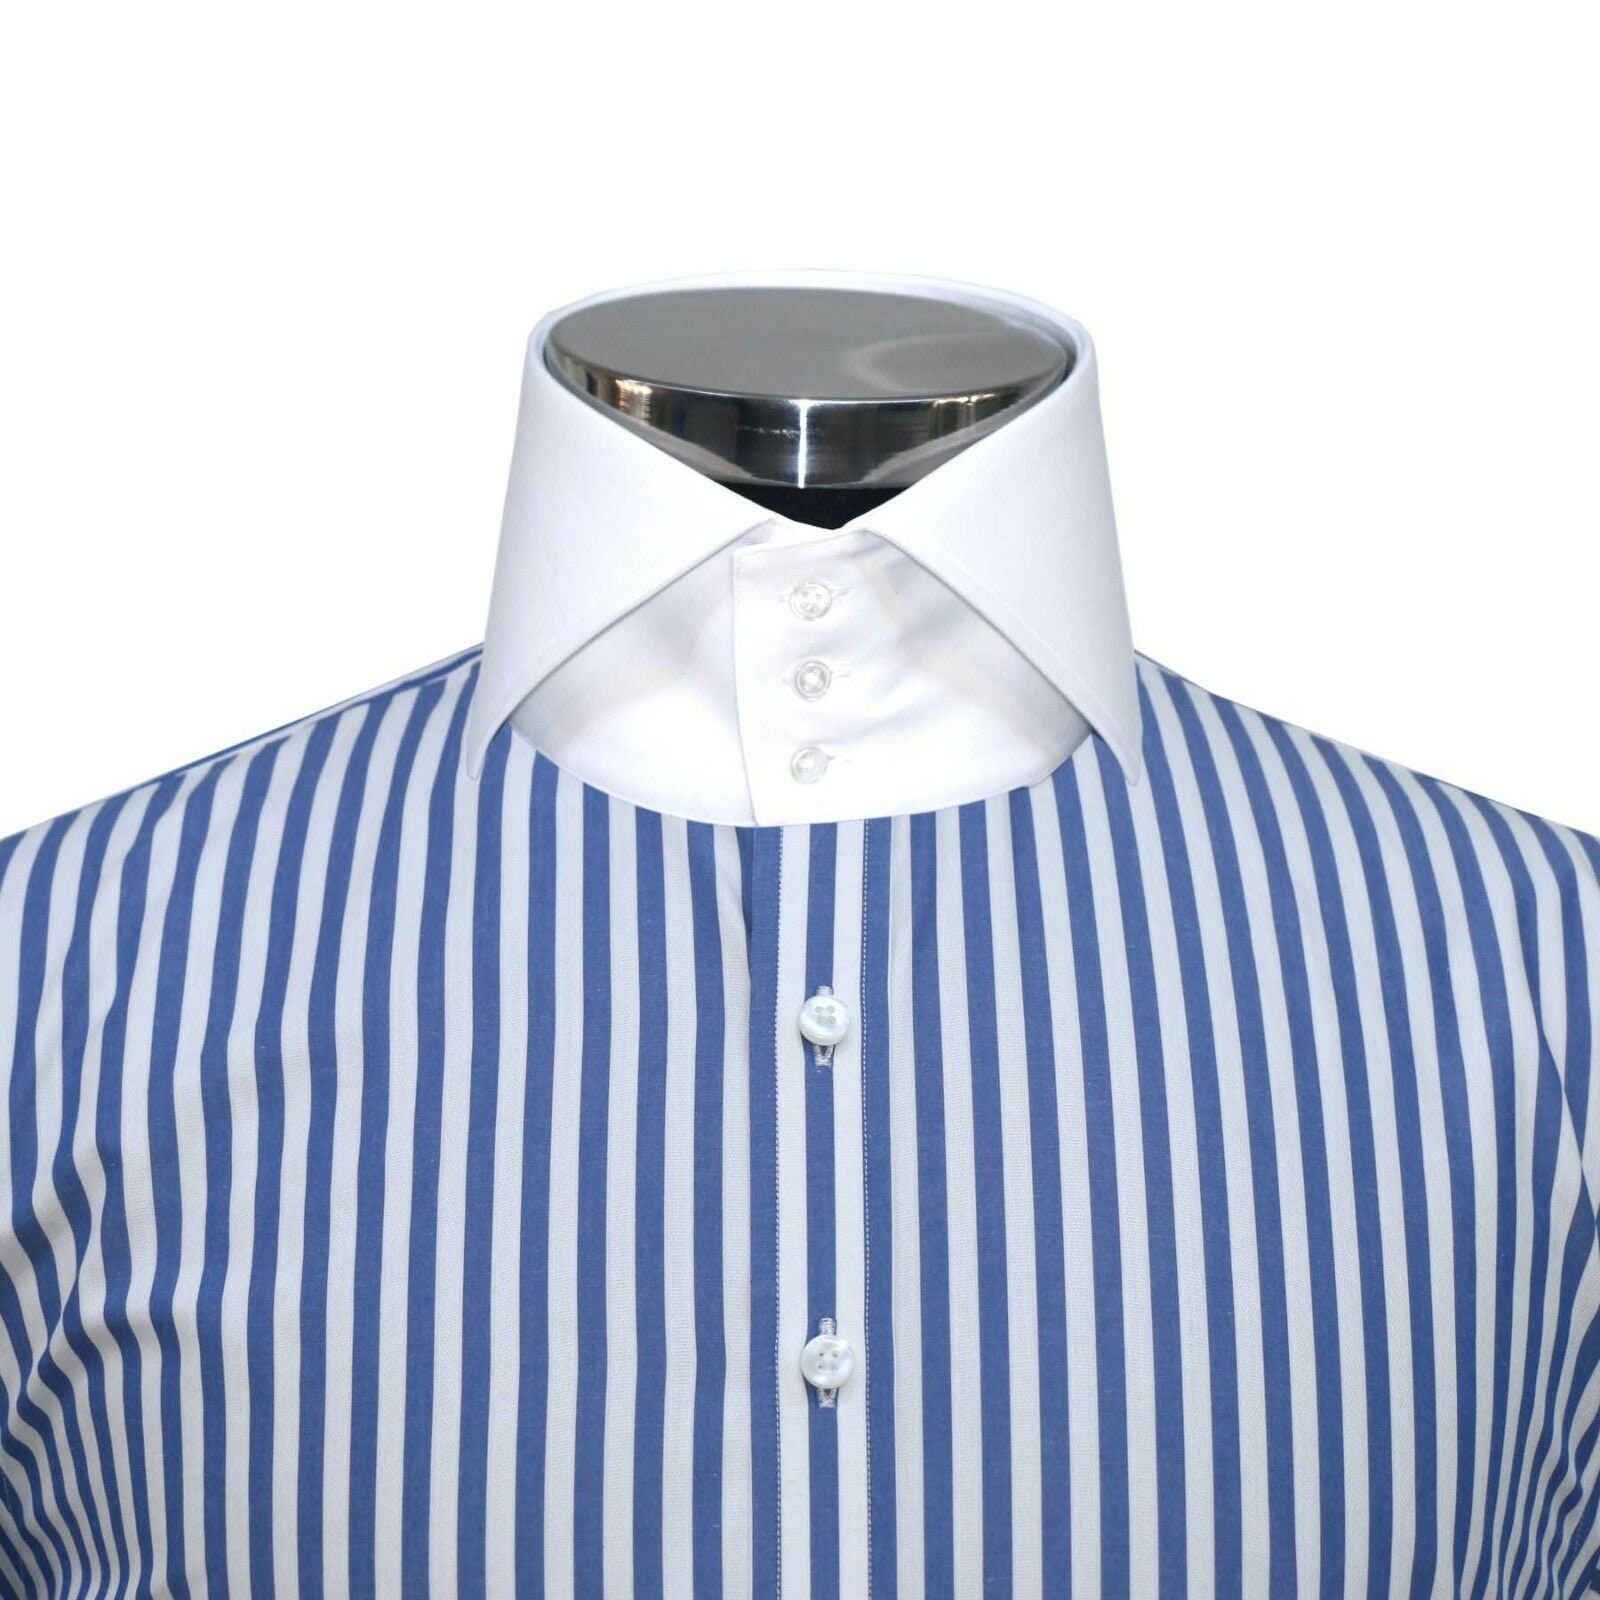 Italian High Collar Shirts | lupon.gov.ph